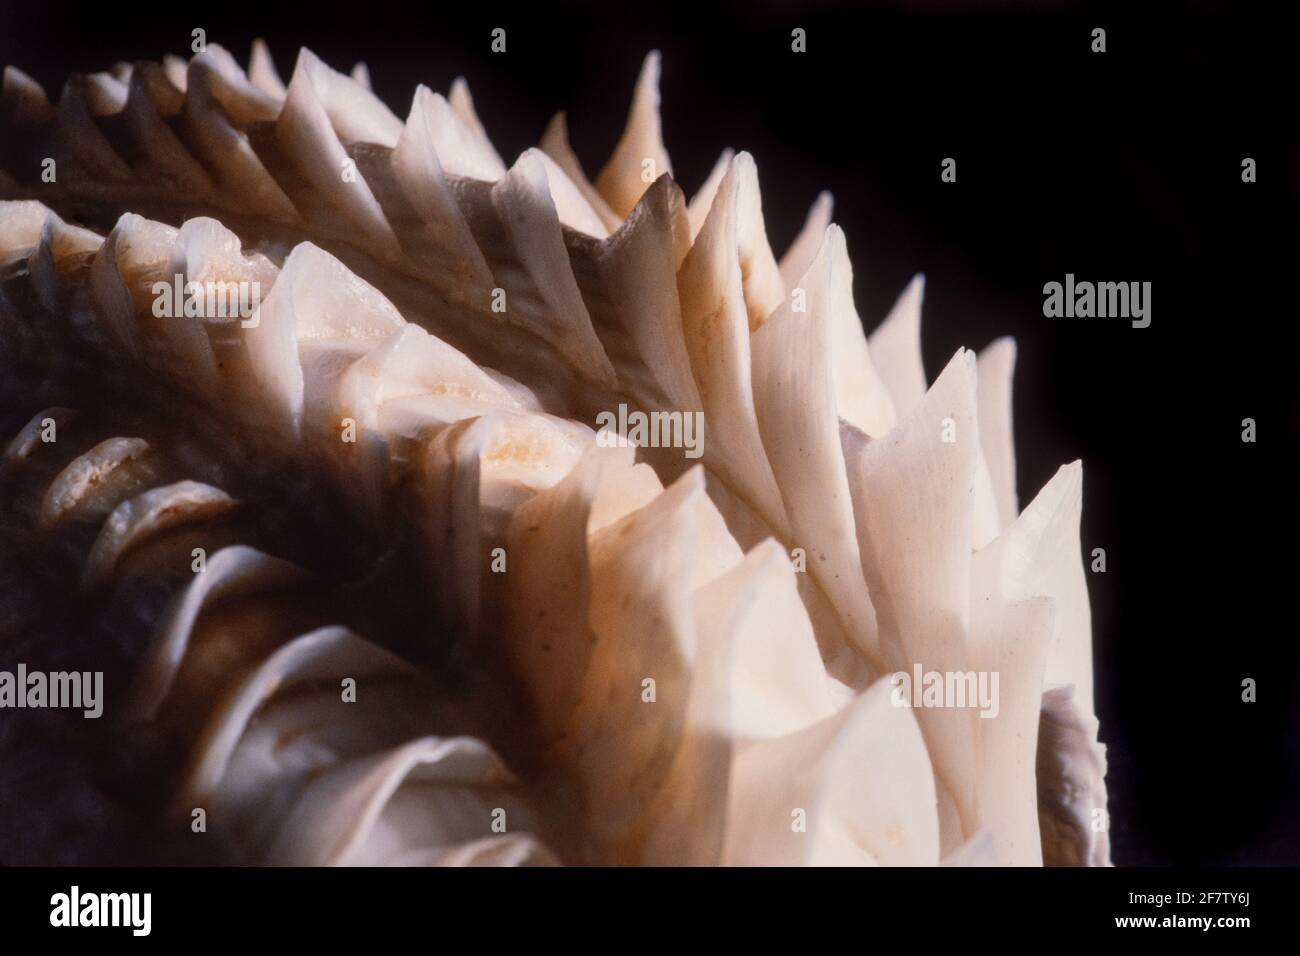 Detail zeigt die blattartigen Schuten oder Flöten einer tridacna-Muschel. Tridacna-Muscheln kommen im Indo-Pazifik und im Roten Meer vor. Stockfoto